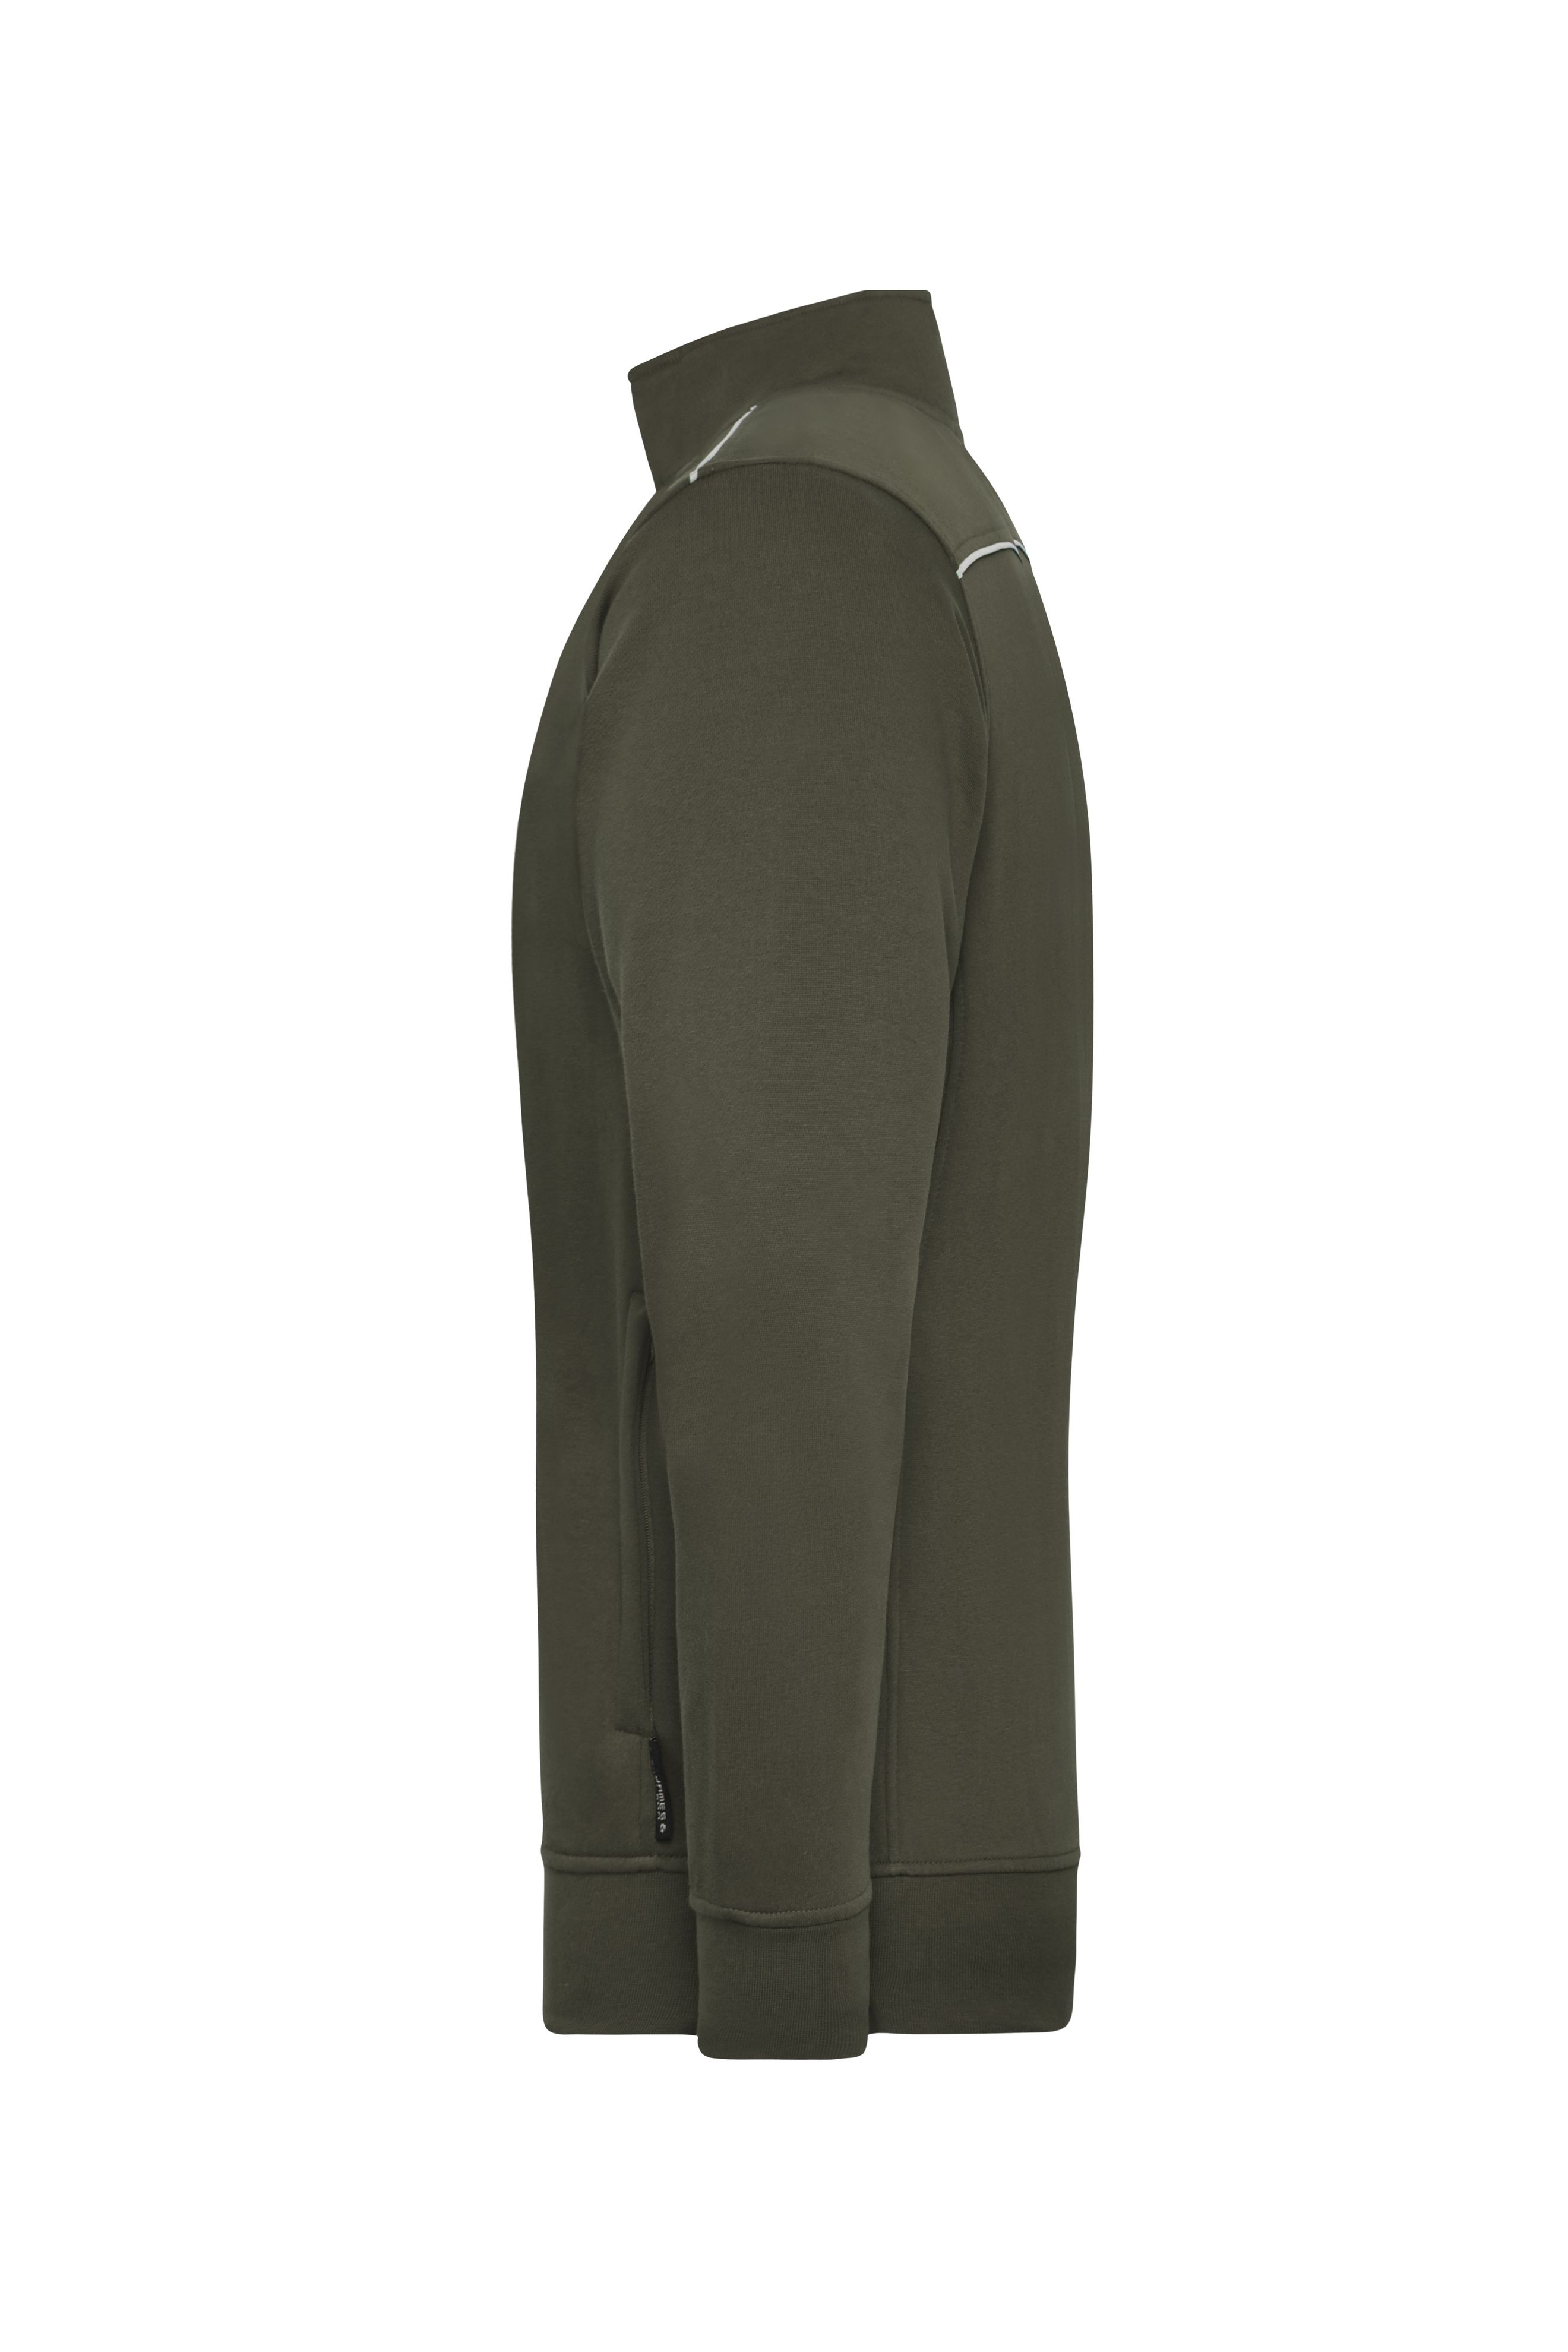 Men's Workwear Sweat-Jacket - SOLID - JN894 Sweat-Jacke mit Stehkragen und Kontrastpaspel